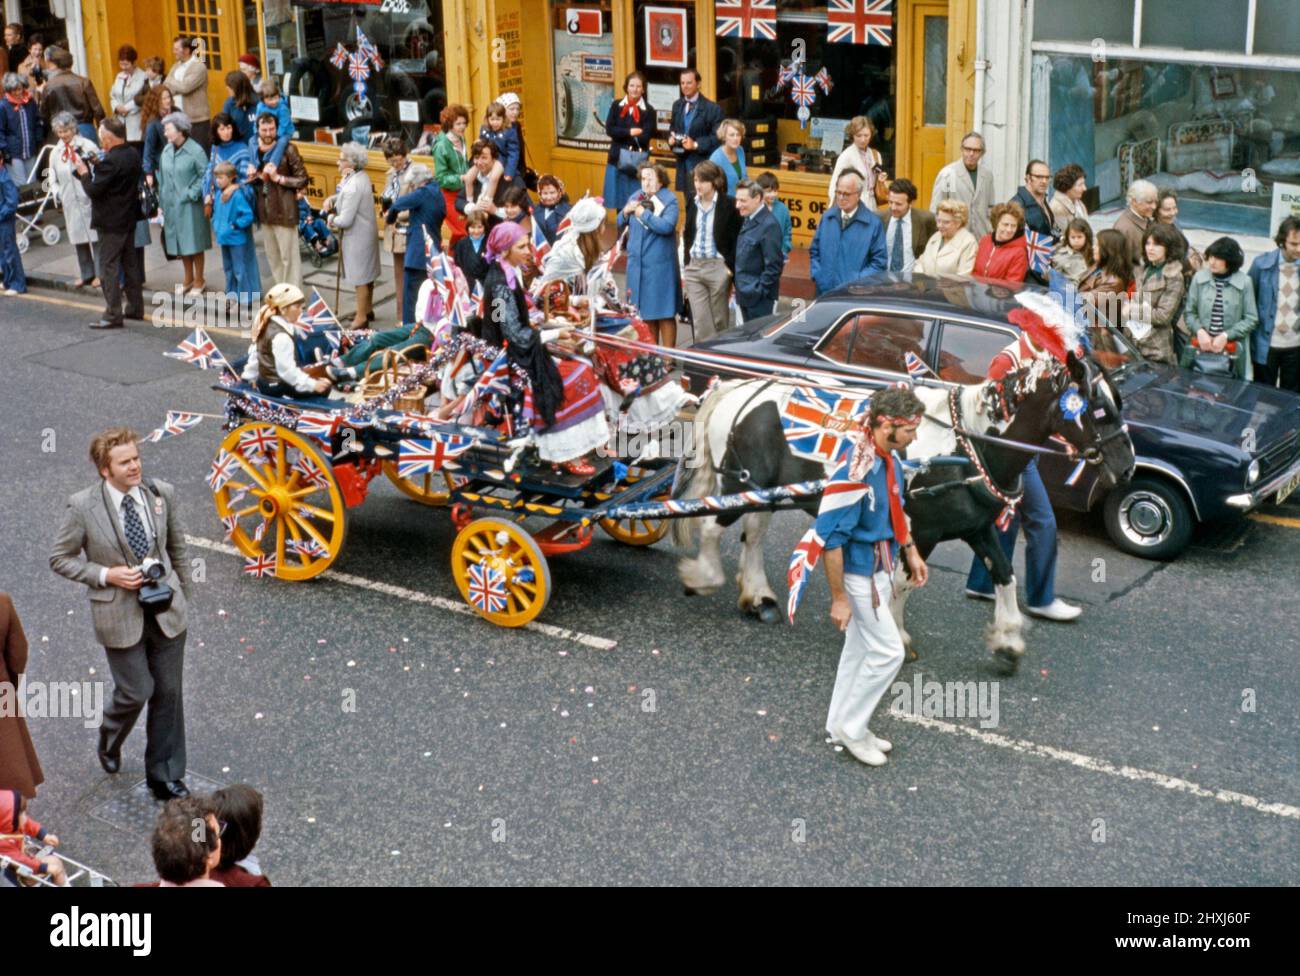 Una sfilata del 6 giugno 1977 per celebrare il Giubileo d'Argento della Regina Elisabetta II Ciò si è svolto a Sheen Lane, East Sheen, nel SW14 di Londra, Inghilterra, Regno Unito. Qui un cavallo e un carretto a tema zingaro passa lungo la strada. Le bandiere di Union Jack di tutte le dimensioni sono in mostra. Il venticinquesimo anniversario dell’incoronazione della Regina è stato il 6 febbraio 1977, ma il 7 giugno è stato designato per una grande giornata ufficiale e non ufficiale in tutto il paese. Questa immagine proviene da una vecchia trasparenza del colore amatoriale – una fotografia d'epoca del 1970s. Foto Stock